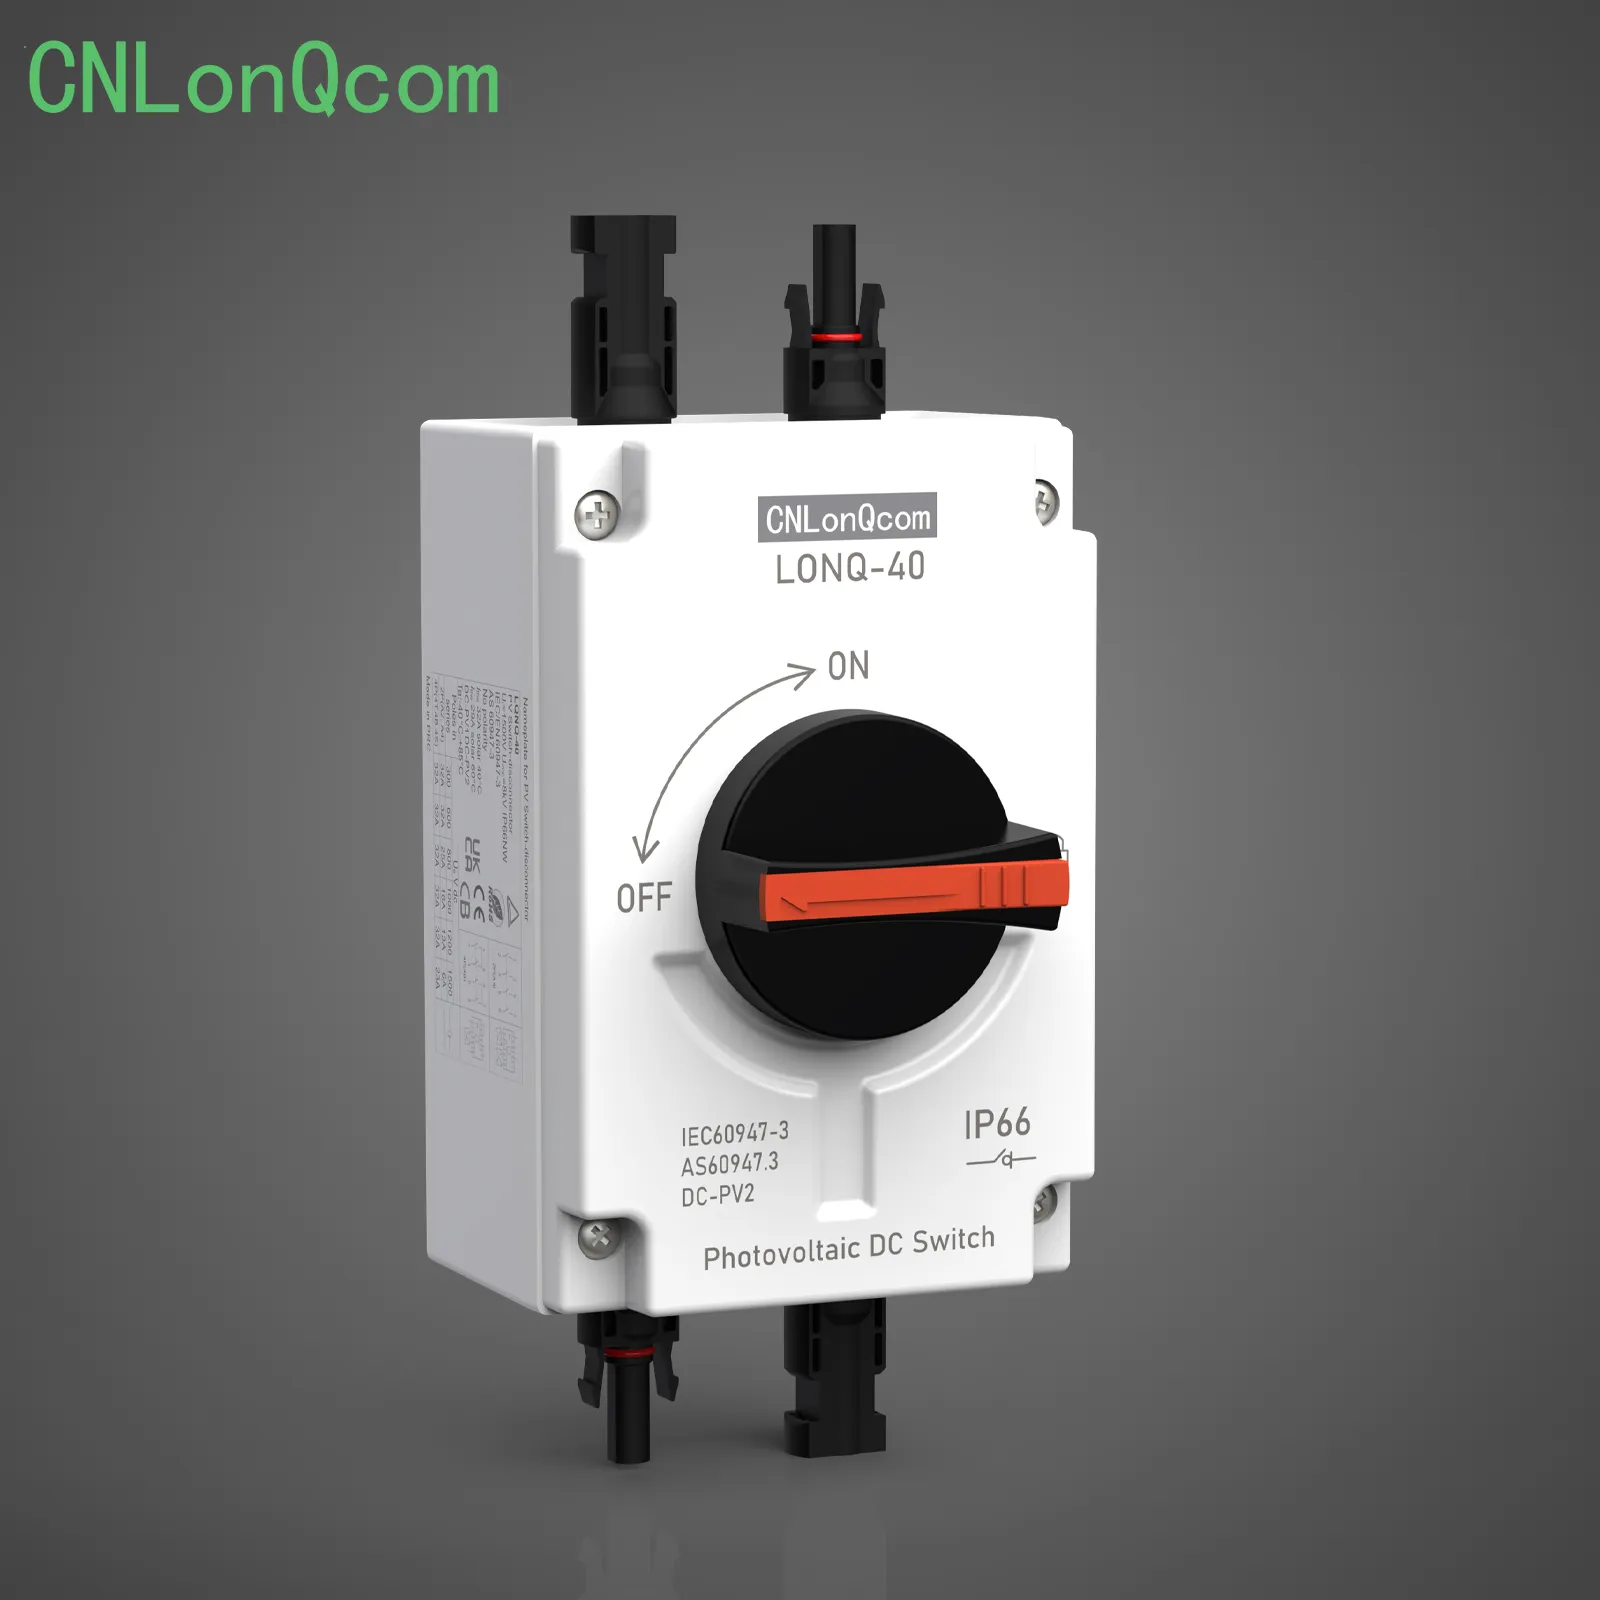 CNLonQcom apresenta interruptor isolador em novo vídeo